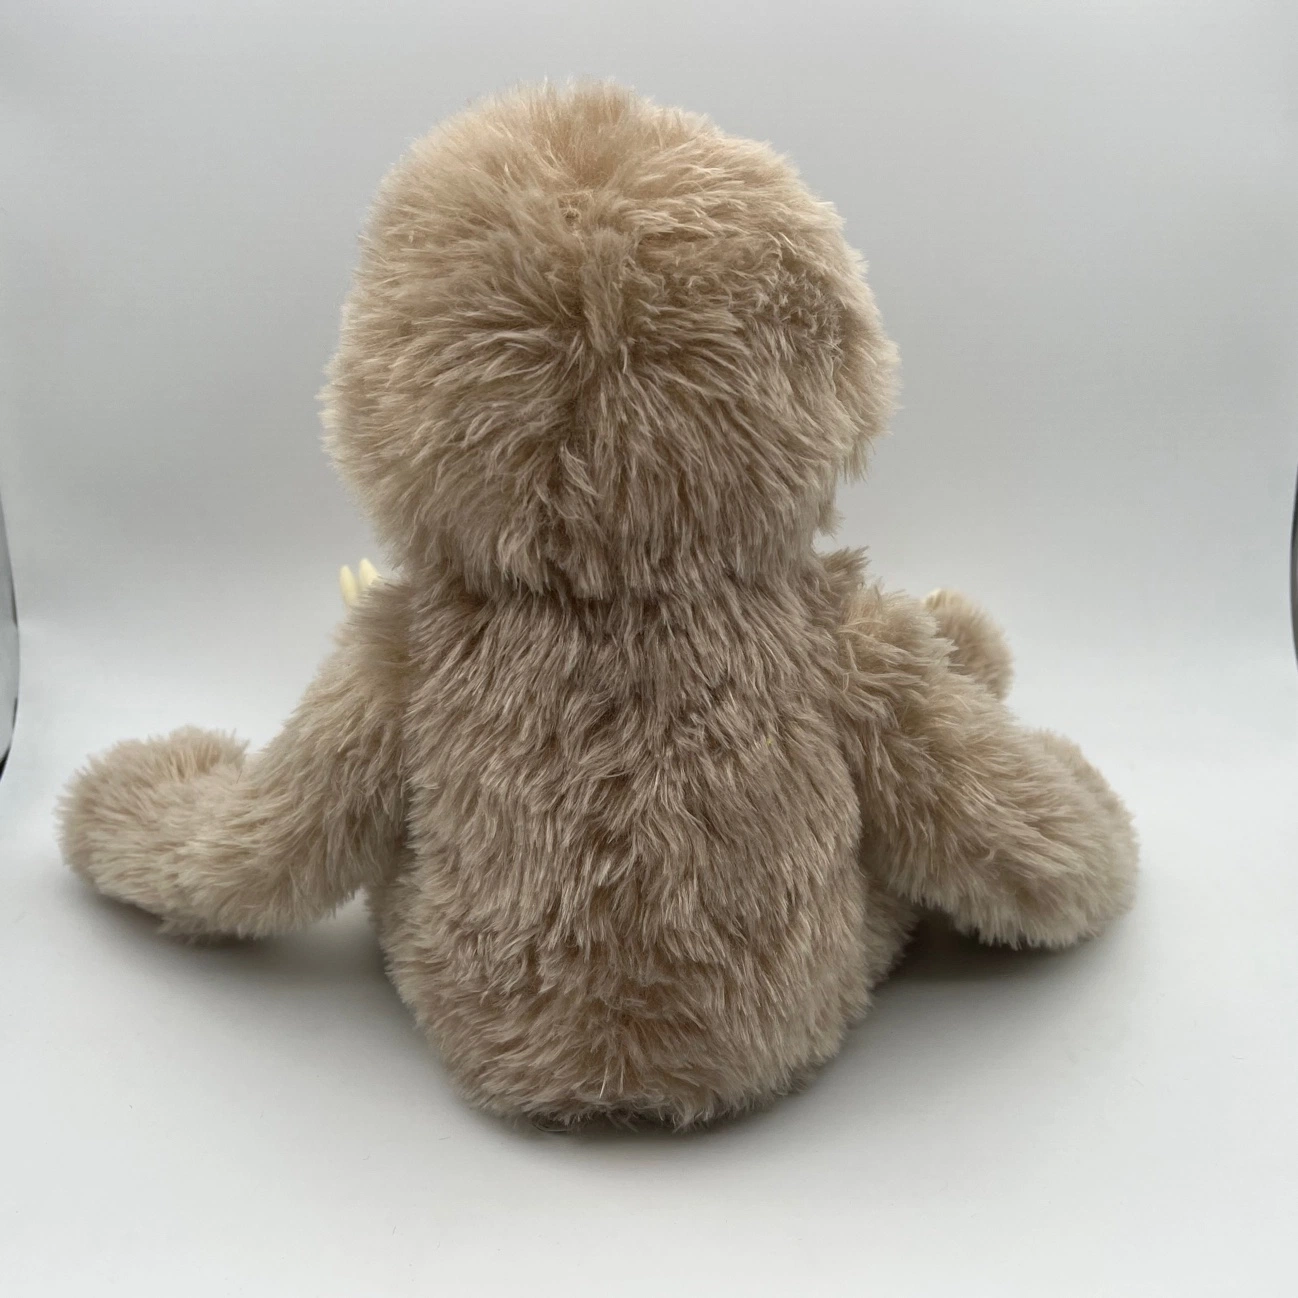 Nuevo directo de fábrica de juguetes de peluche oso perezoso de peluche de regalo para niños Baby Doll con lujosos Sloth